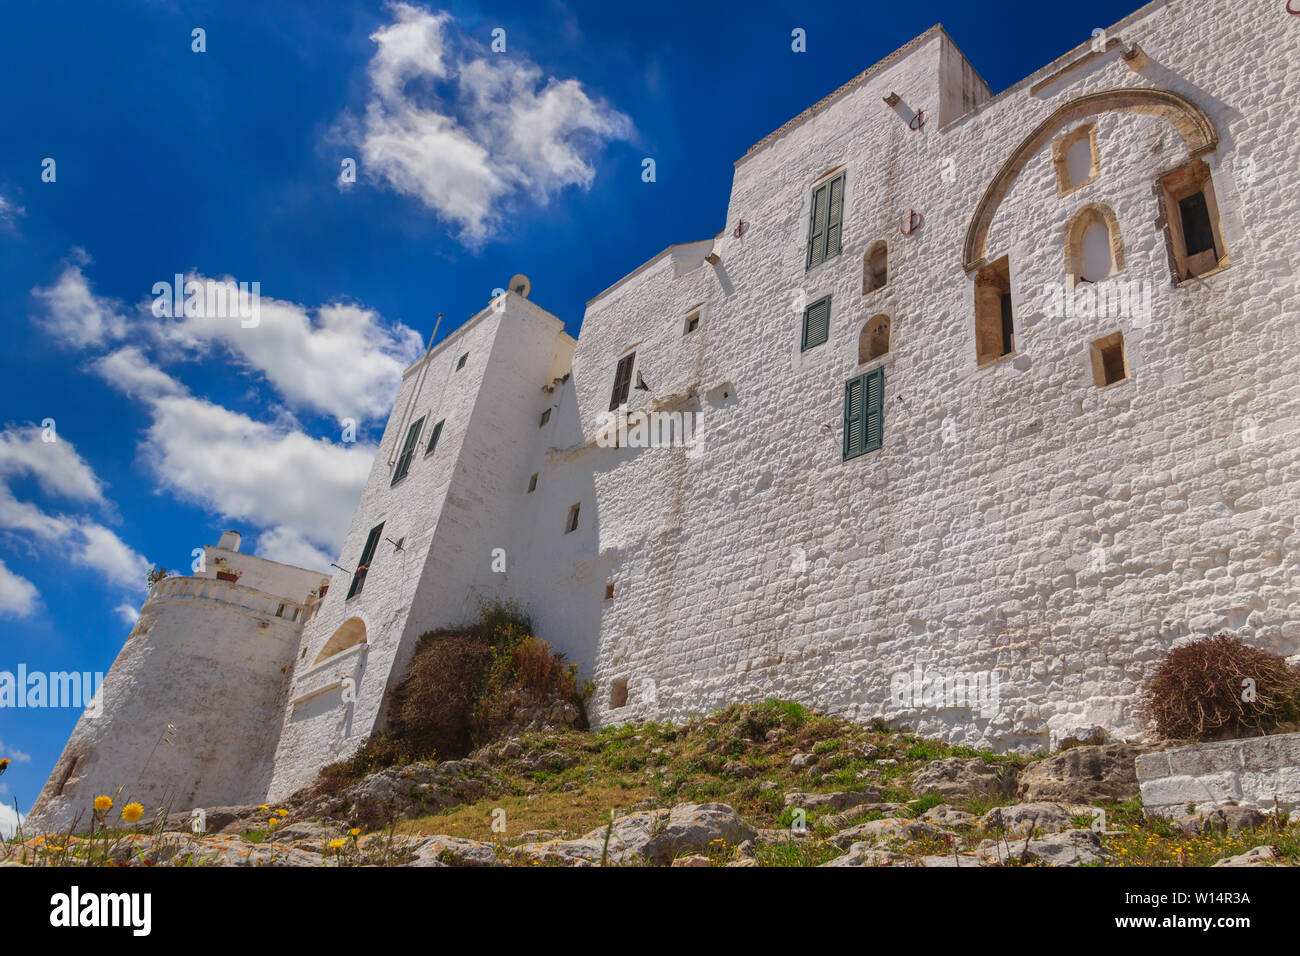 El casco antiguo de Ostuni, Puglia, Italia. Se conoce comúnmente como "la Ciudad Blanca" por sus paredes blancas y su arquitectura típicamente pintada de blanco. Foto de stock